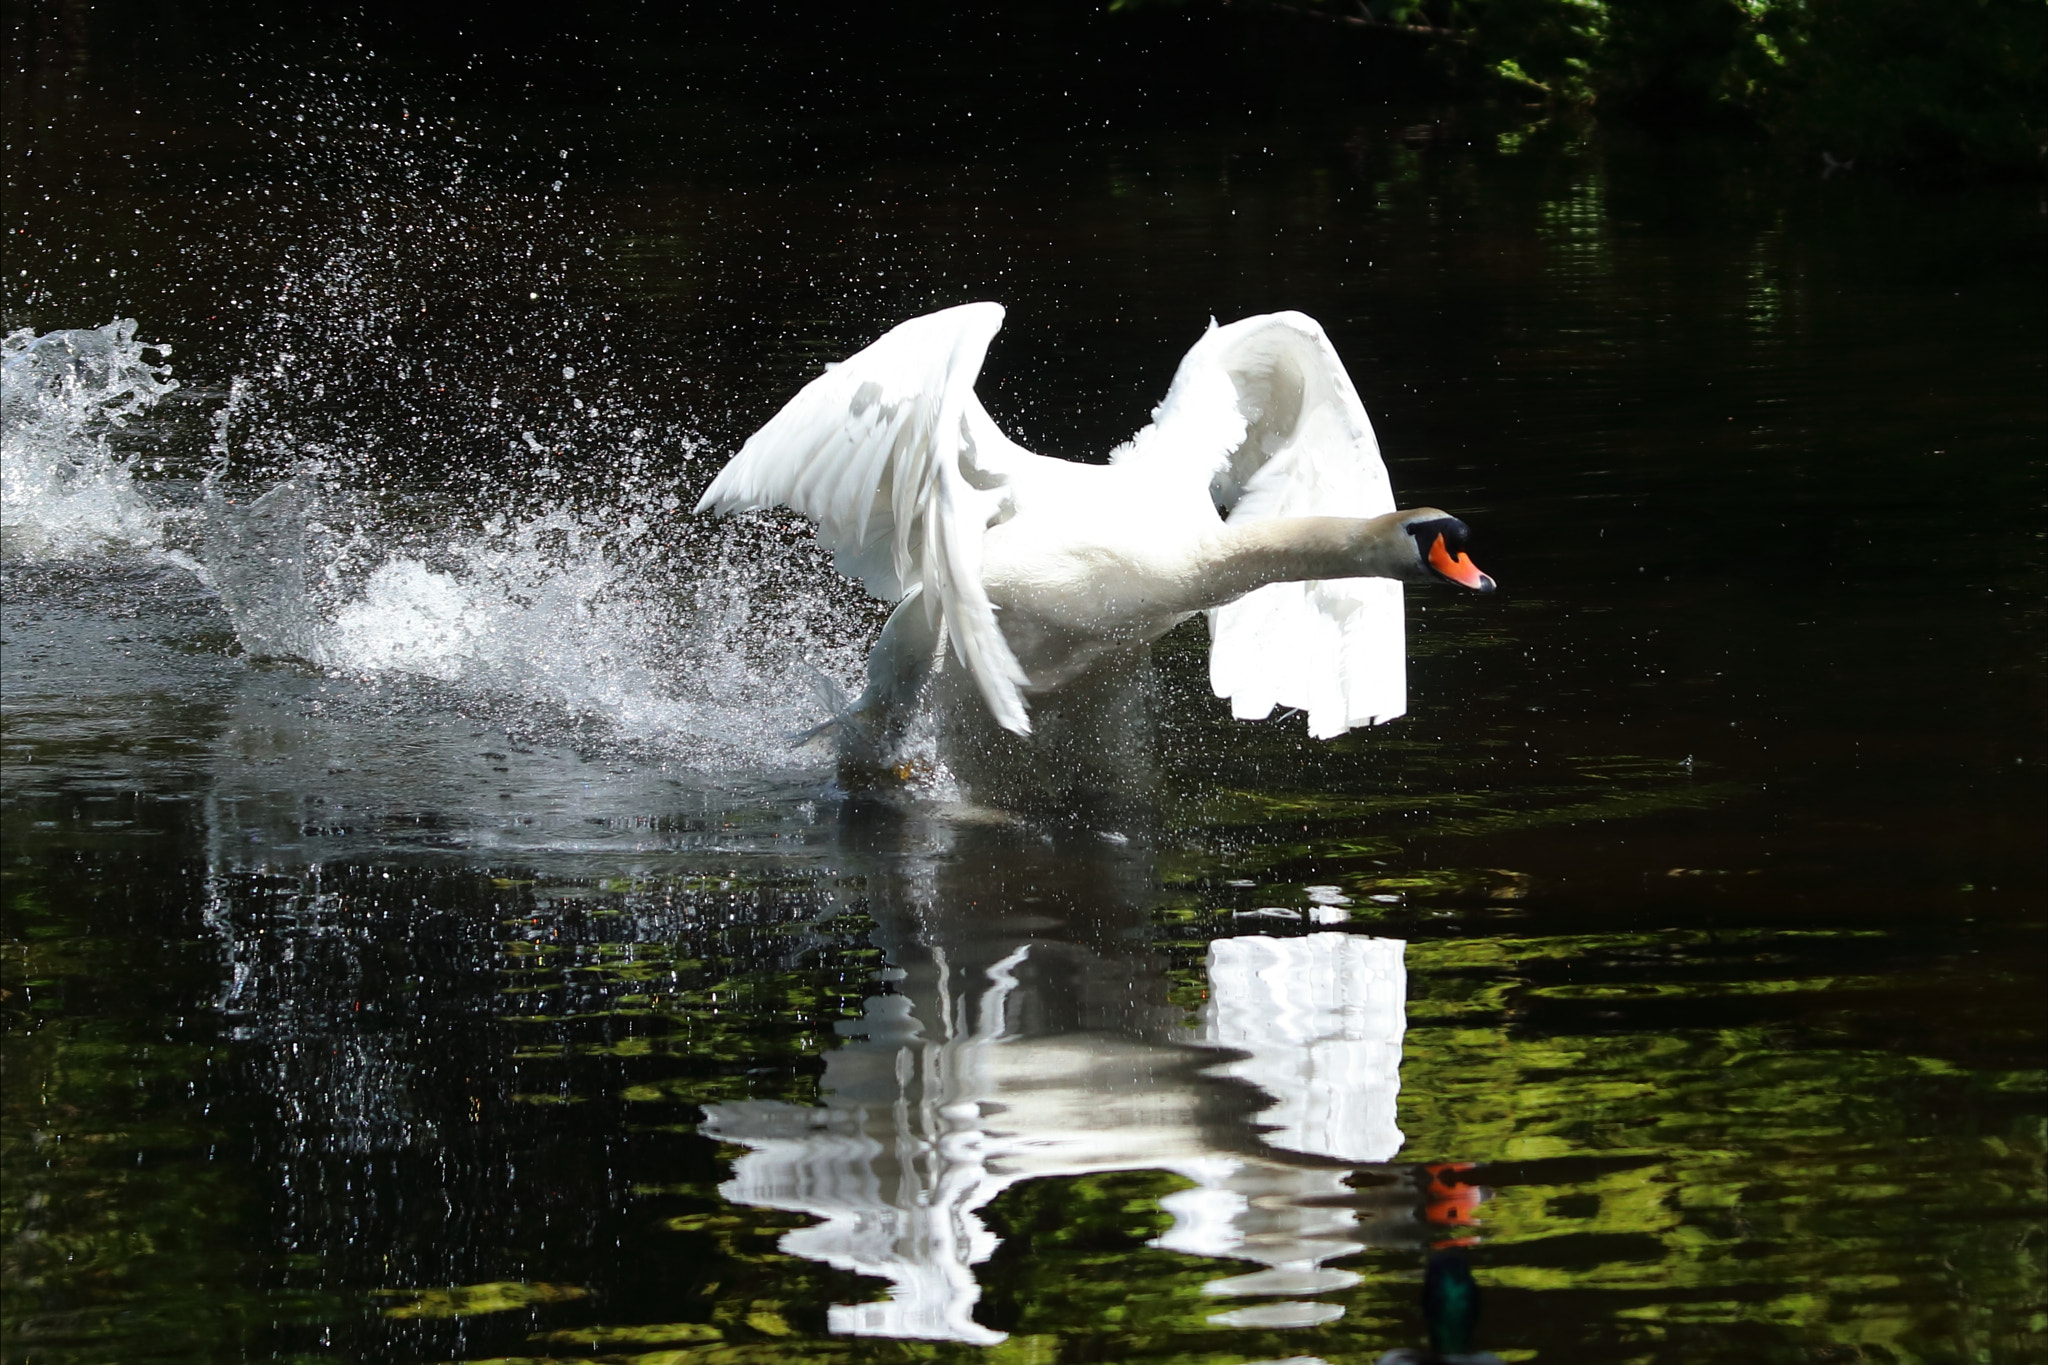 Swan take off